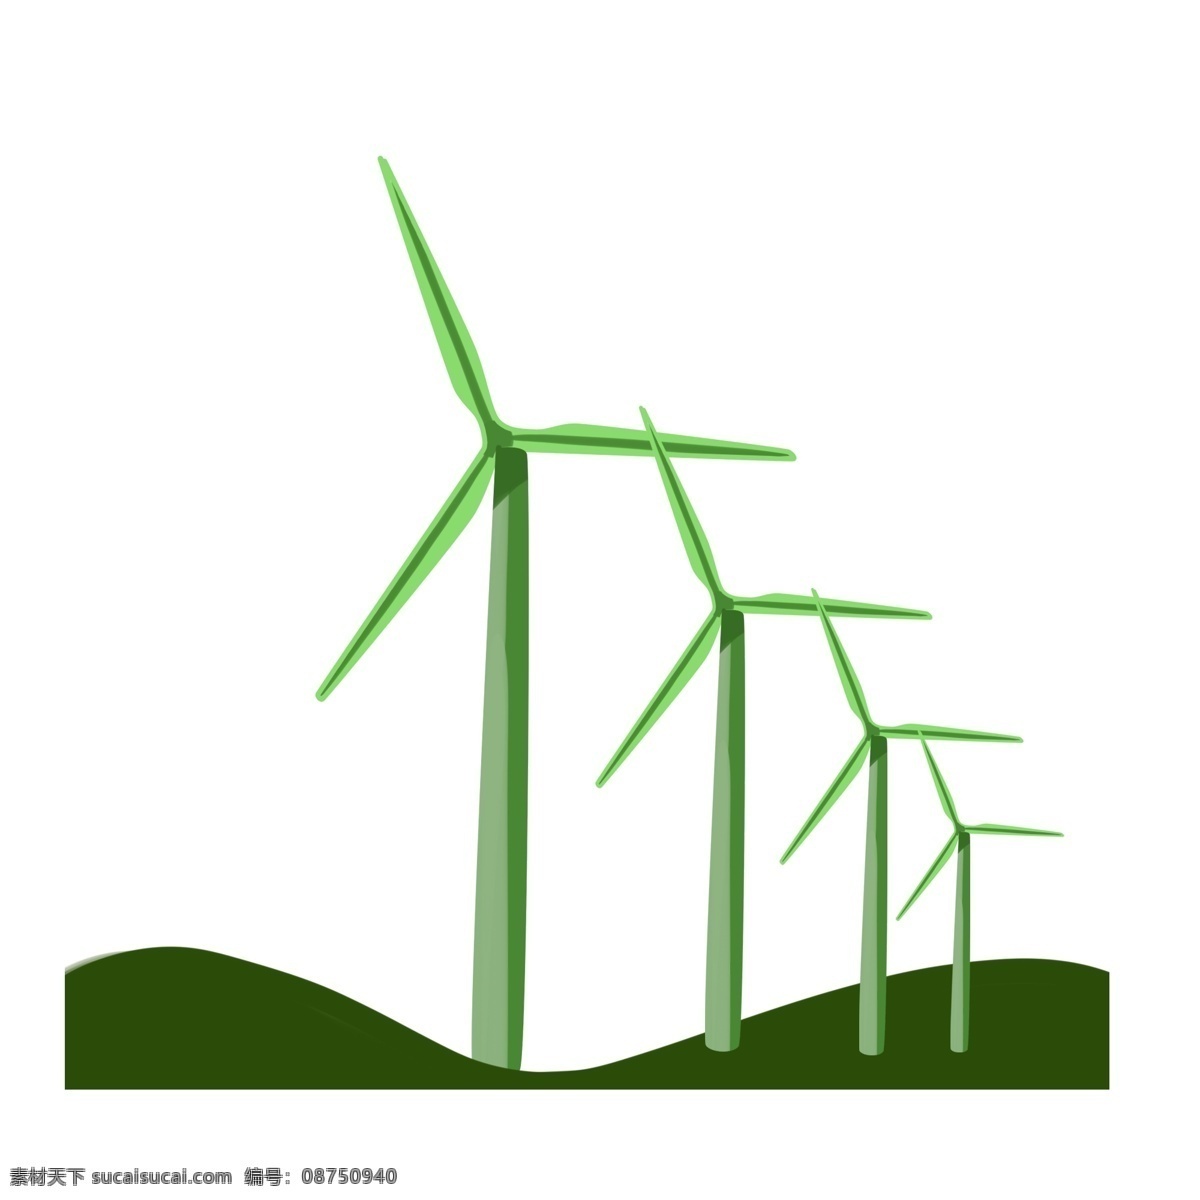 发电 风车 环保 插画 发电的风车 卡通插画 风车插画 风车环保 风力发电 绿色的小山